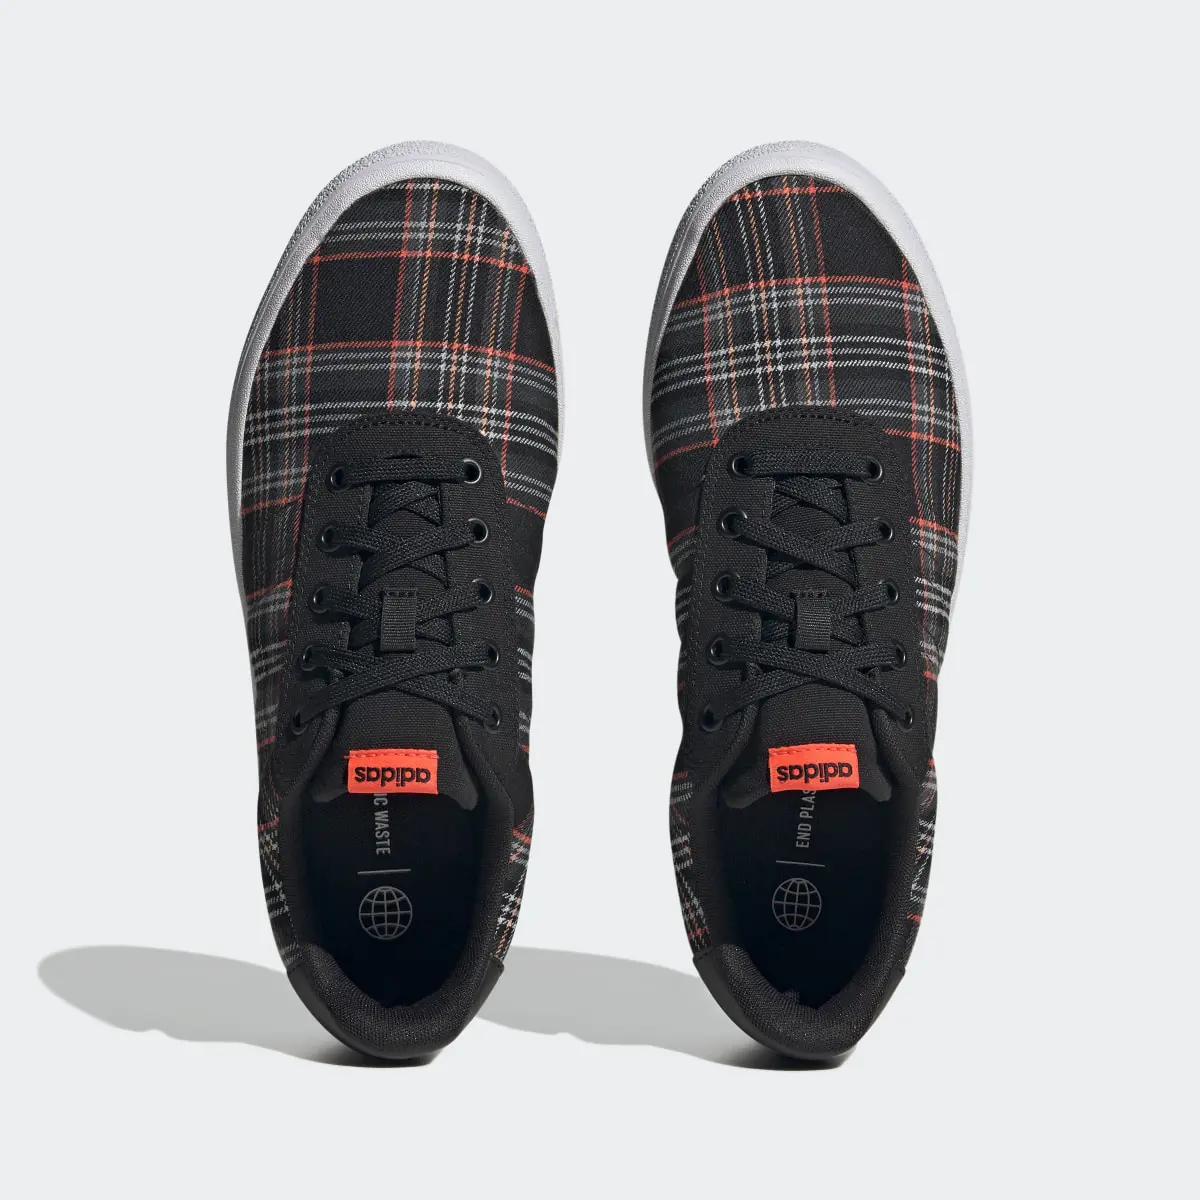 Adidas Chaussure Vulc Raid3r Lifestyle Skateboarding 3-Stripes Branding. 3